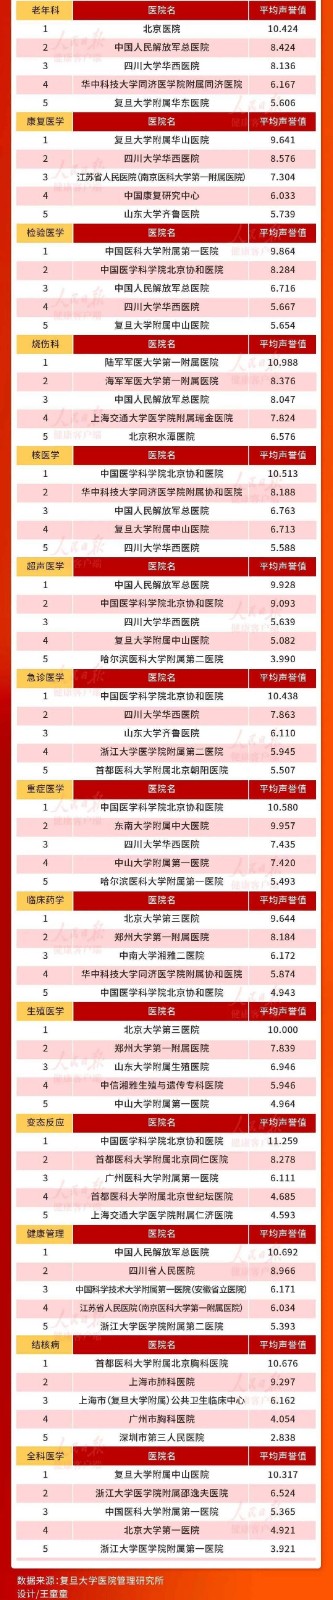 2020年度中国医院排行榜发布_图1-5